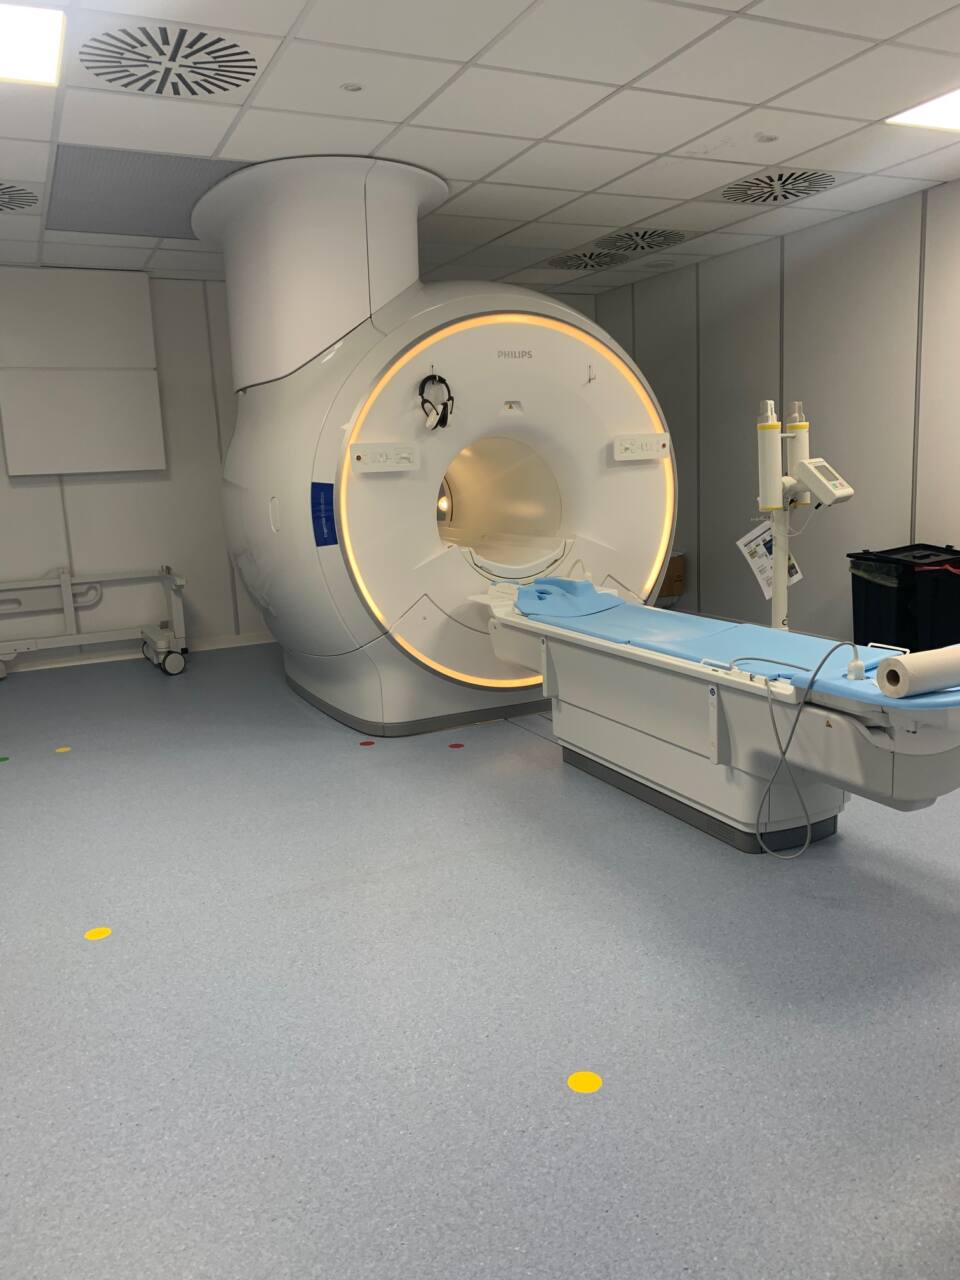 La nuova risonanza installata e già in funzione nel reparto di Radiologia dell’ospedale Santa Croce di Fano